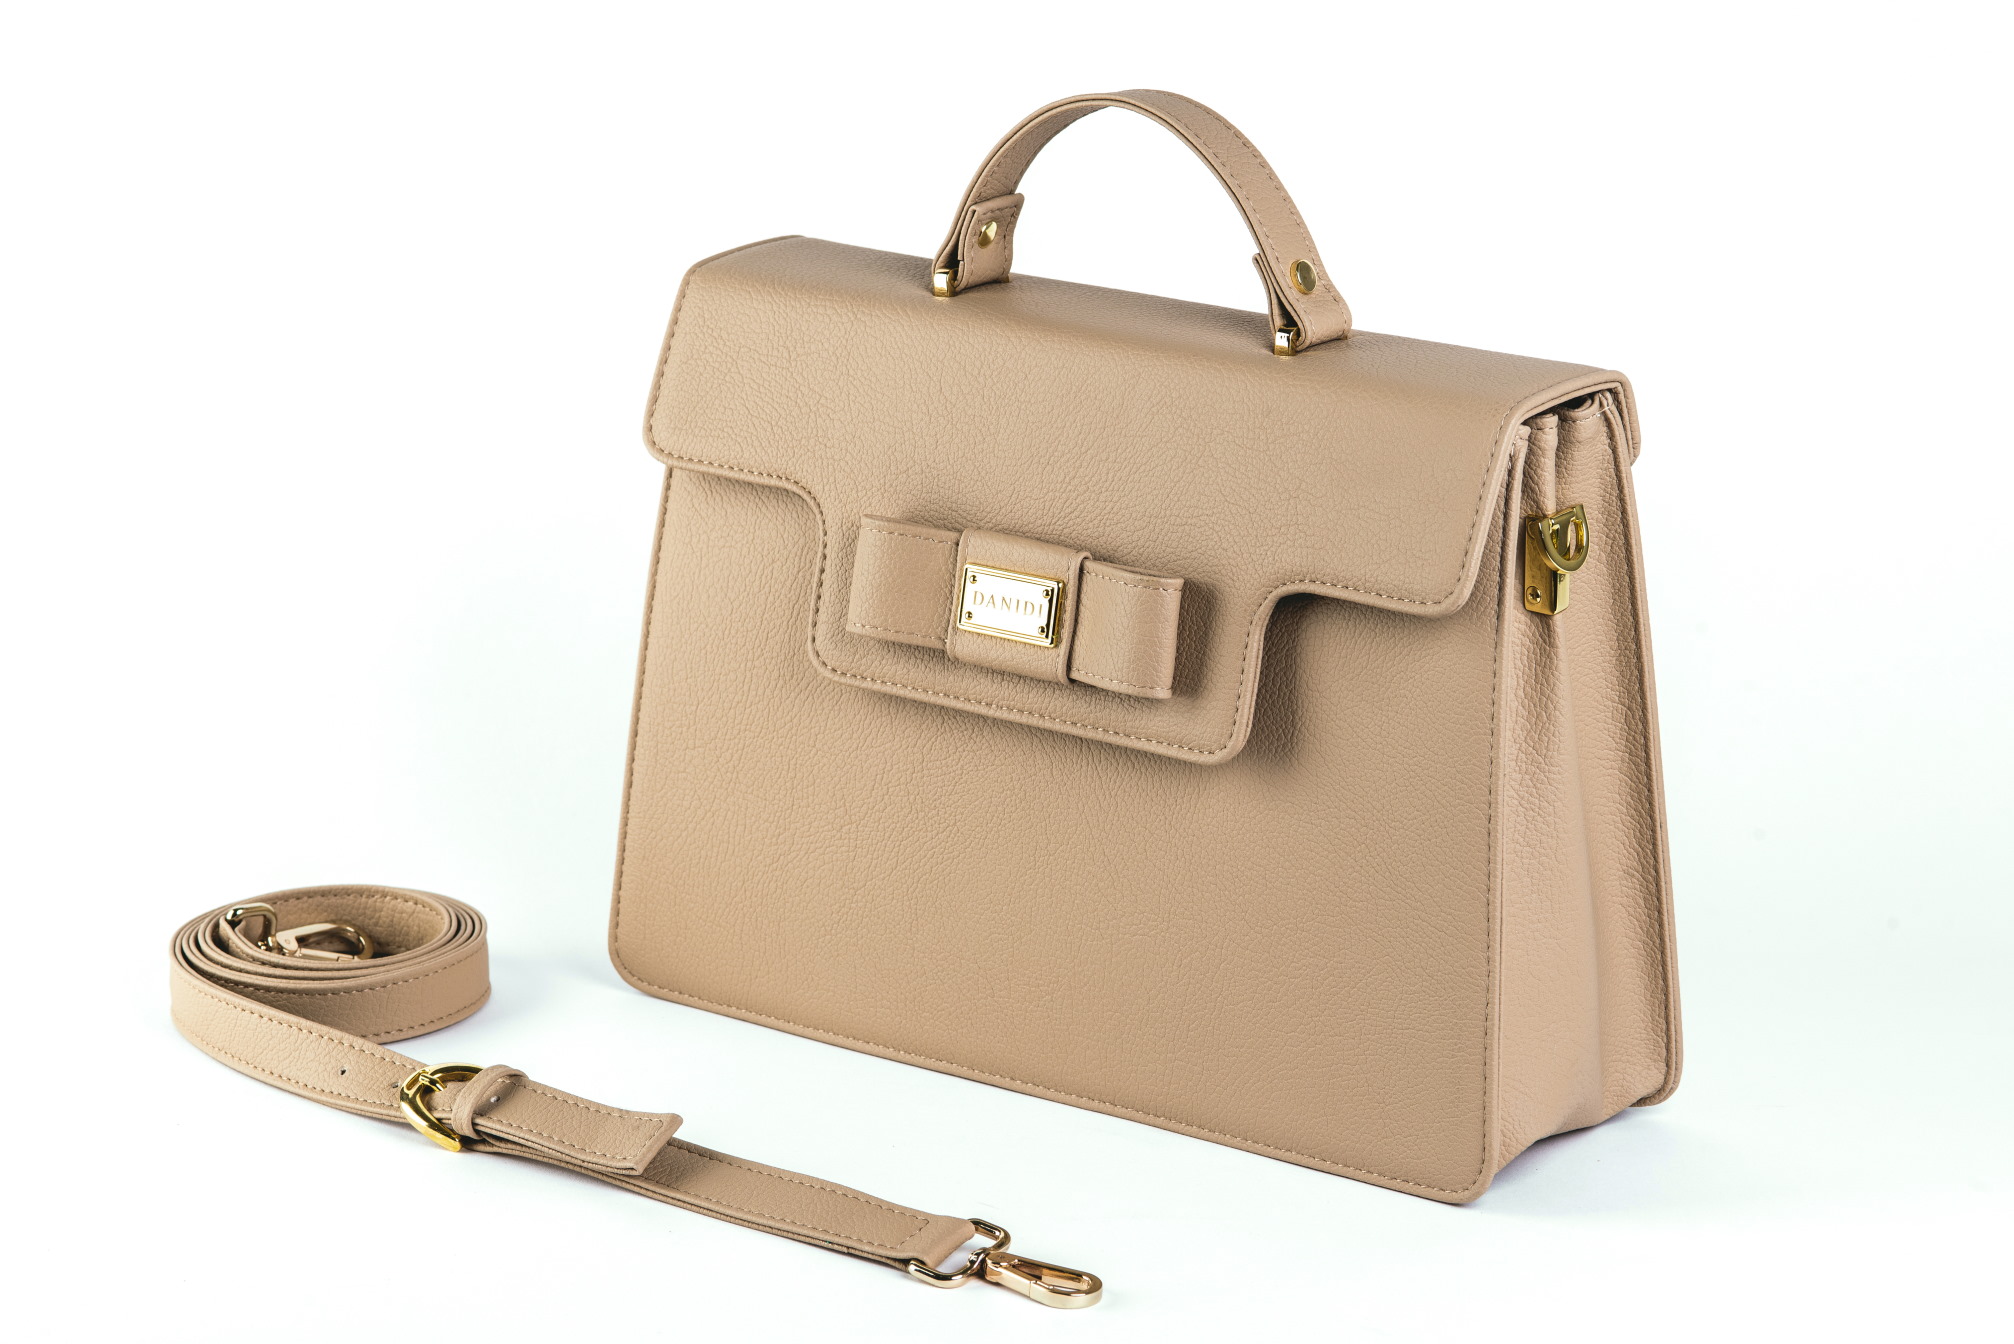 DANIDI je ekskluzivno predstavio najnoviji proizvod iz svoje tvornice - elegantnu poslovnu torbu za žene sa stavom!